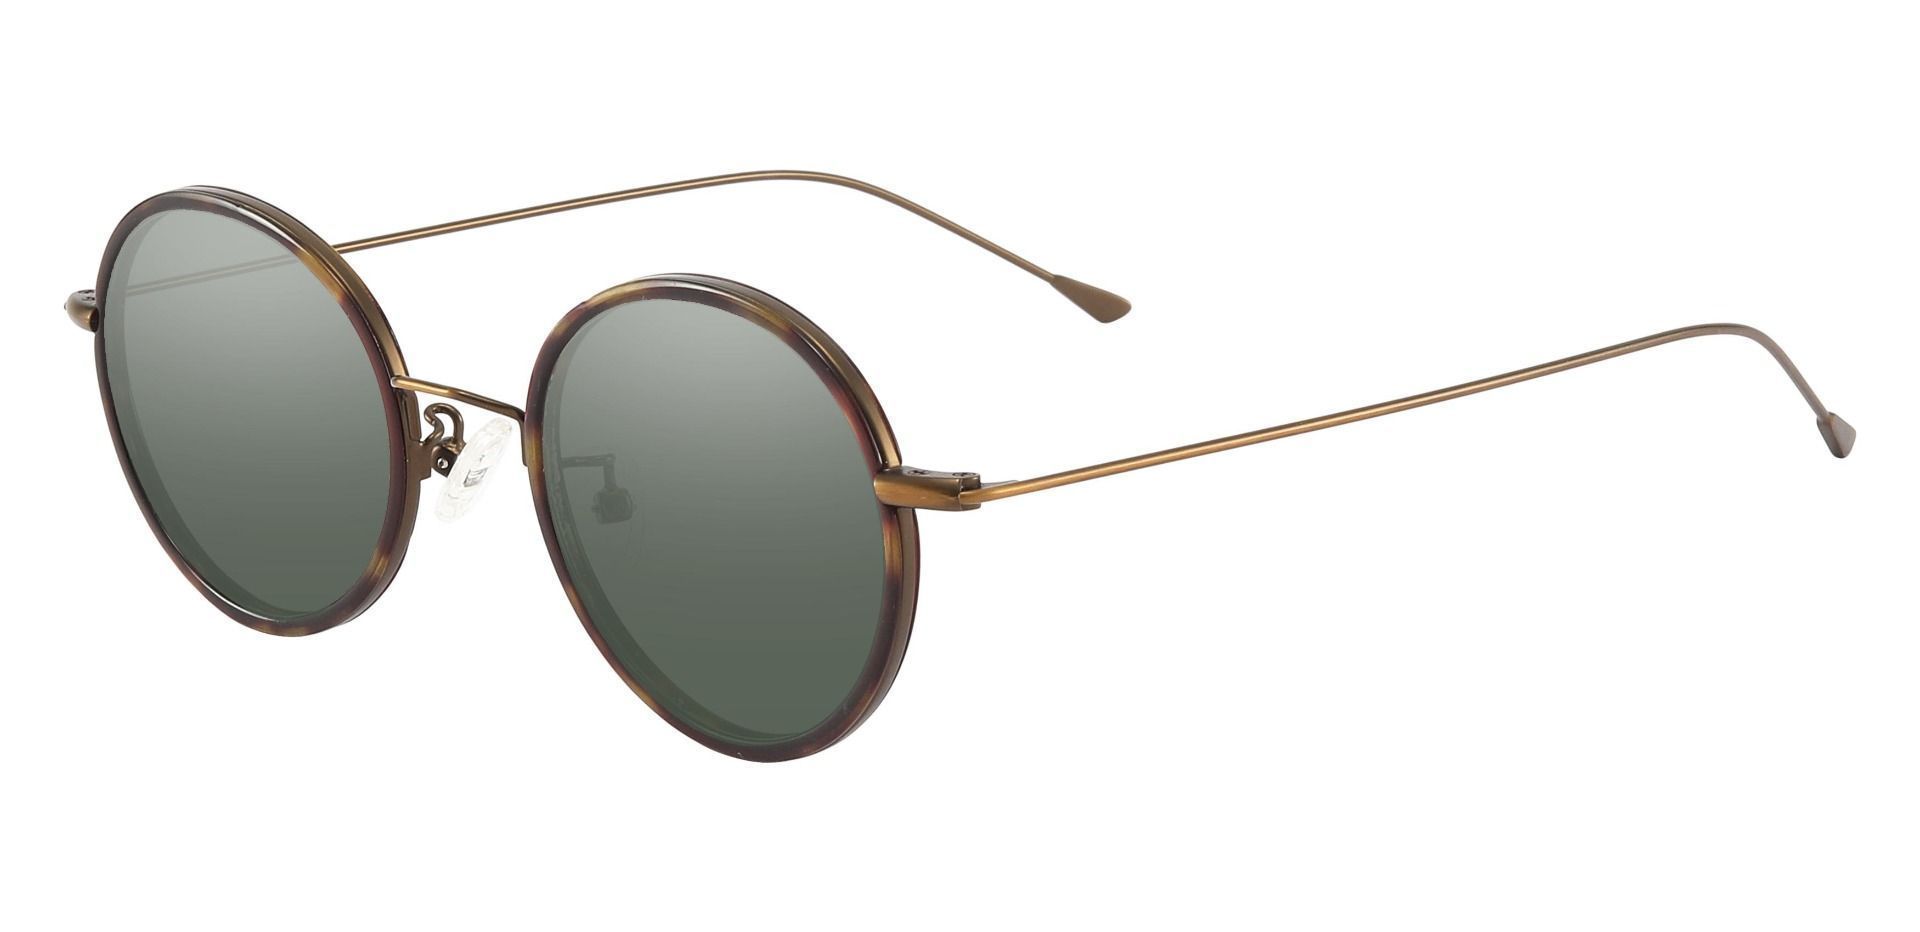 Malverne Oval Progressive Sunglasses - Tortoise Frame With Green Lenses